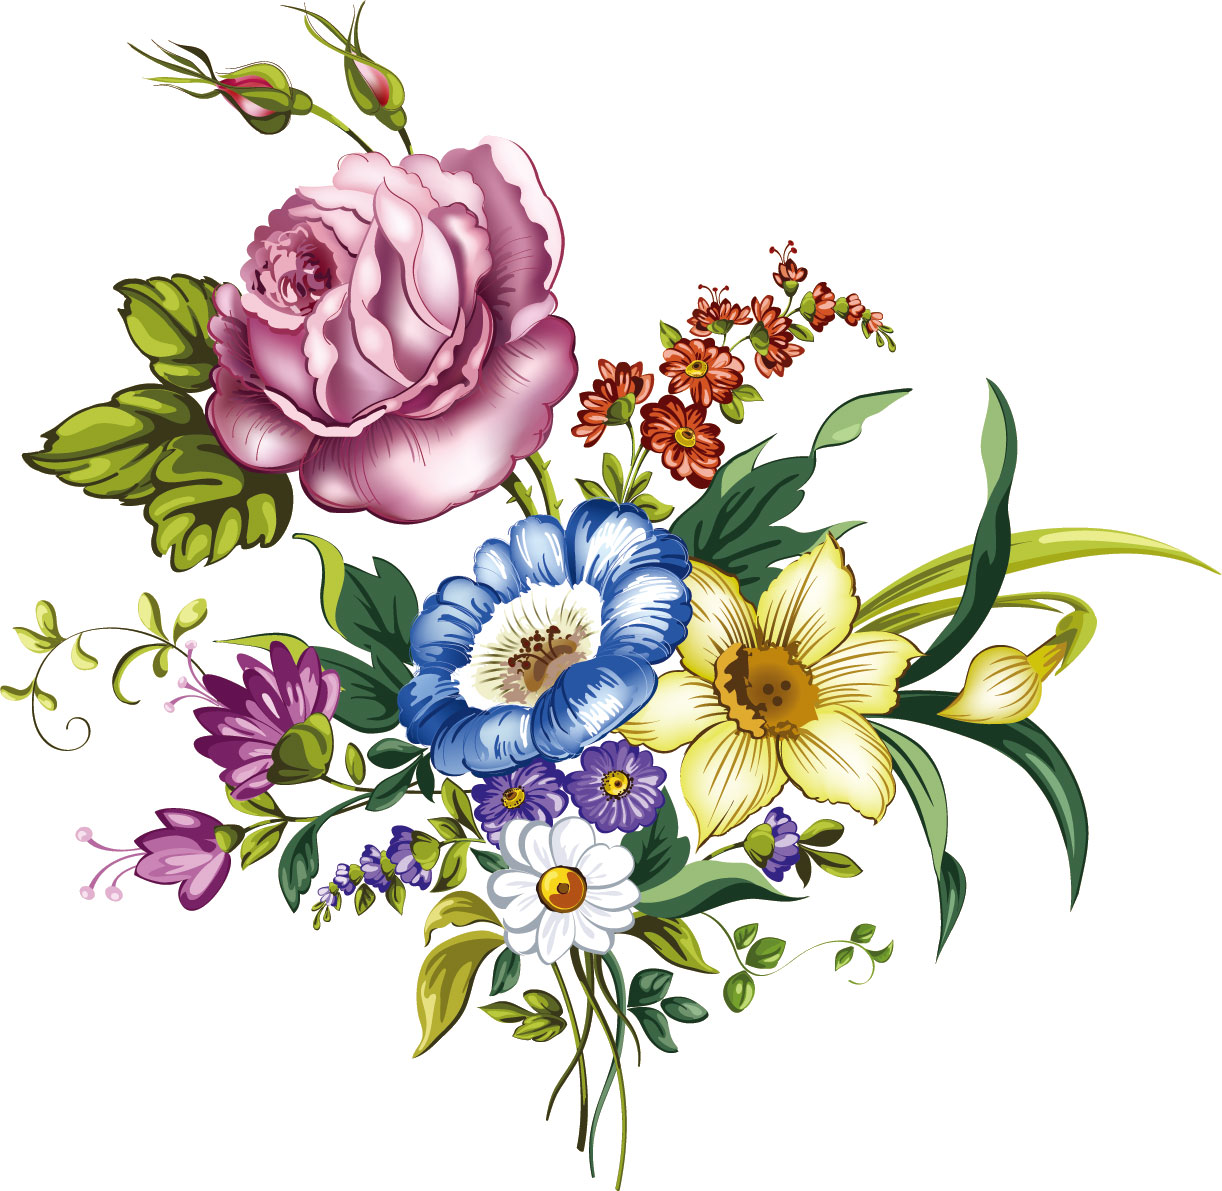 画像サンプル-色々な花の束・手書き風